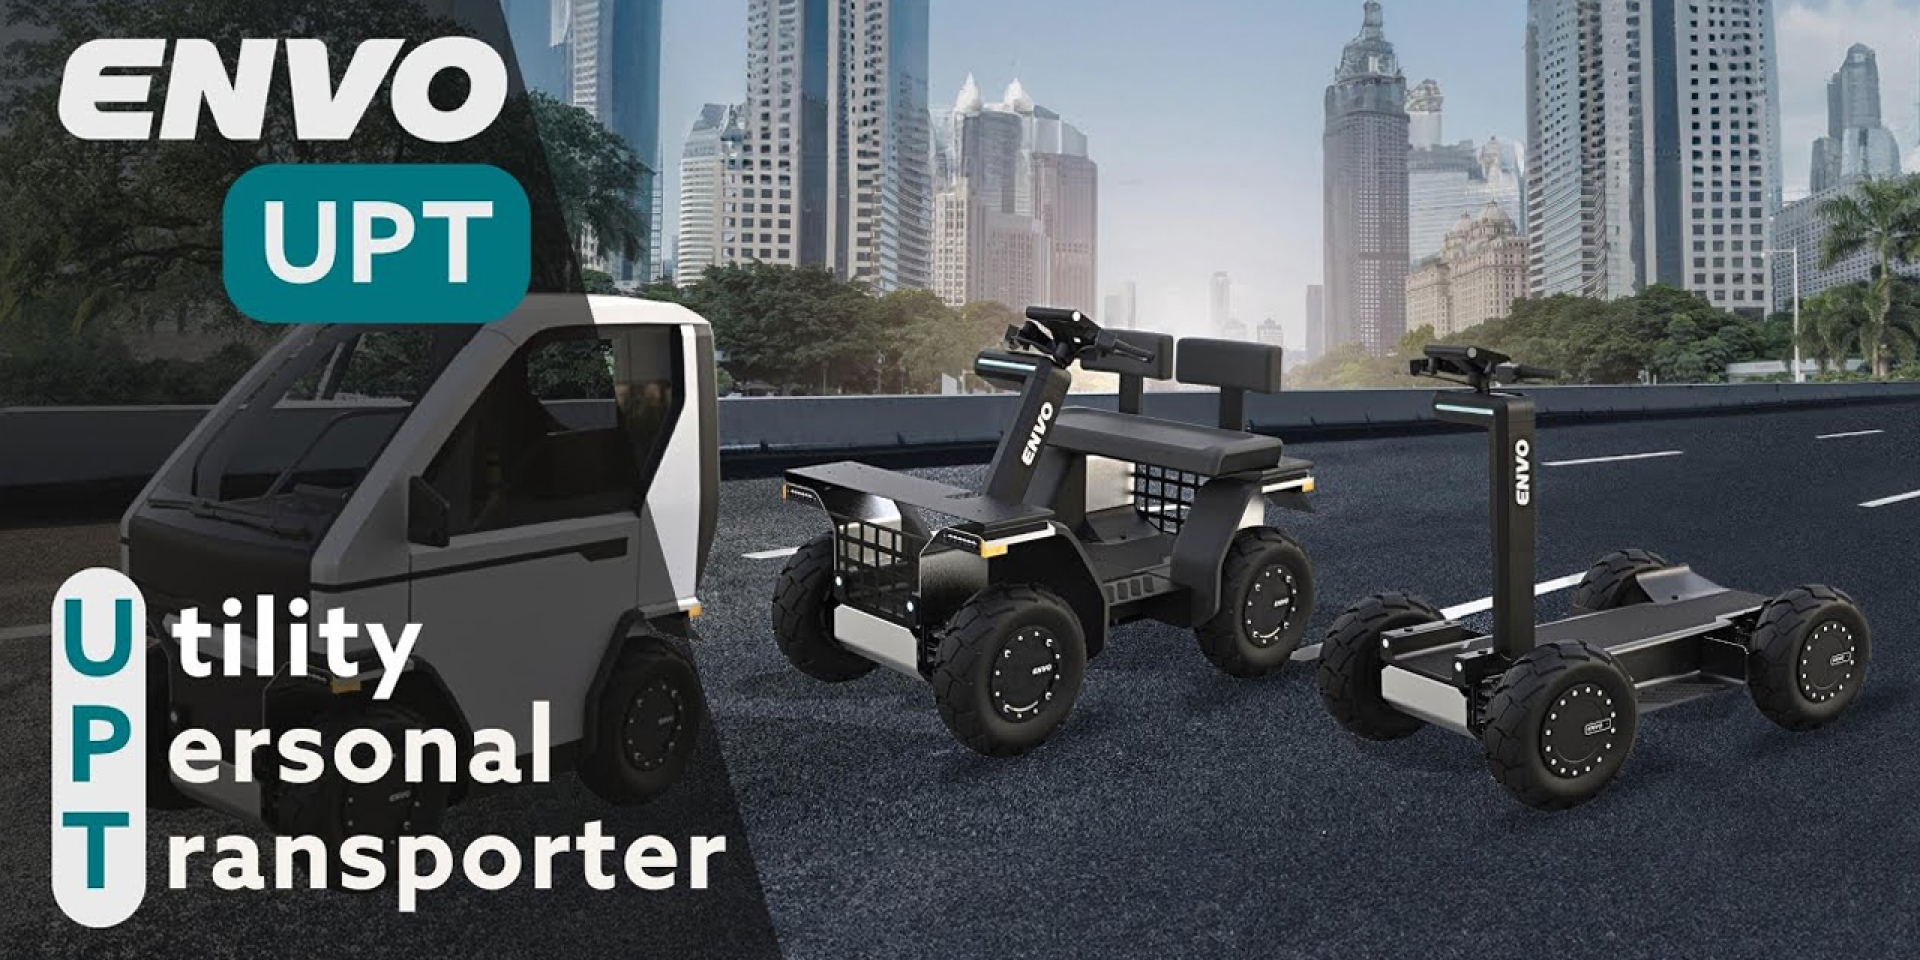 Envo Utility Personal Transporter：12kW四馬達、200公里續航、50公里極速、640Nm扭力的多用途四輪電動車！